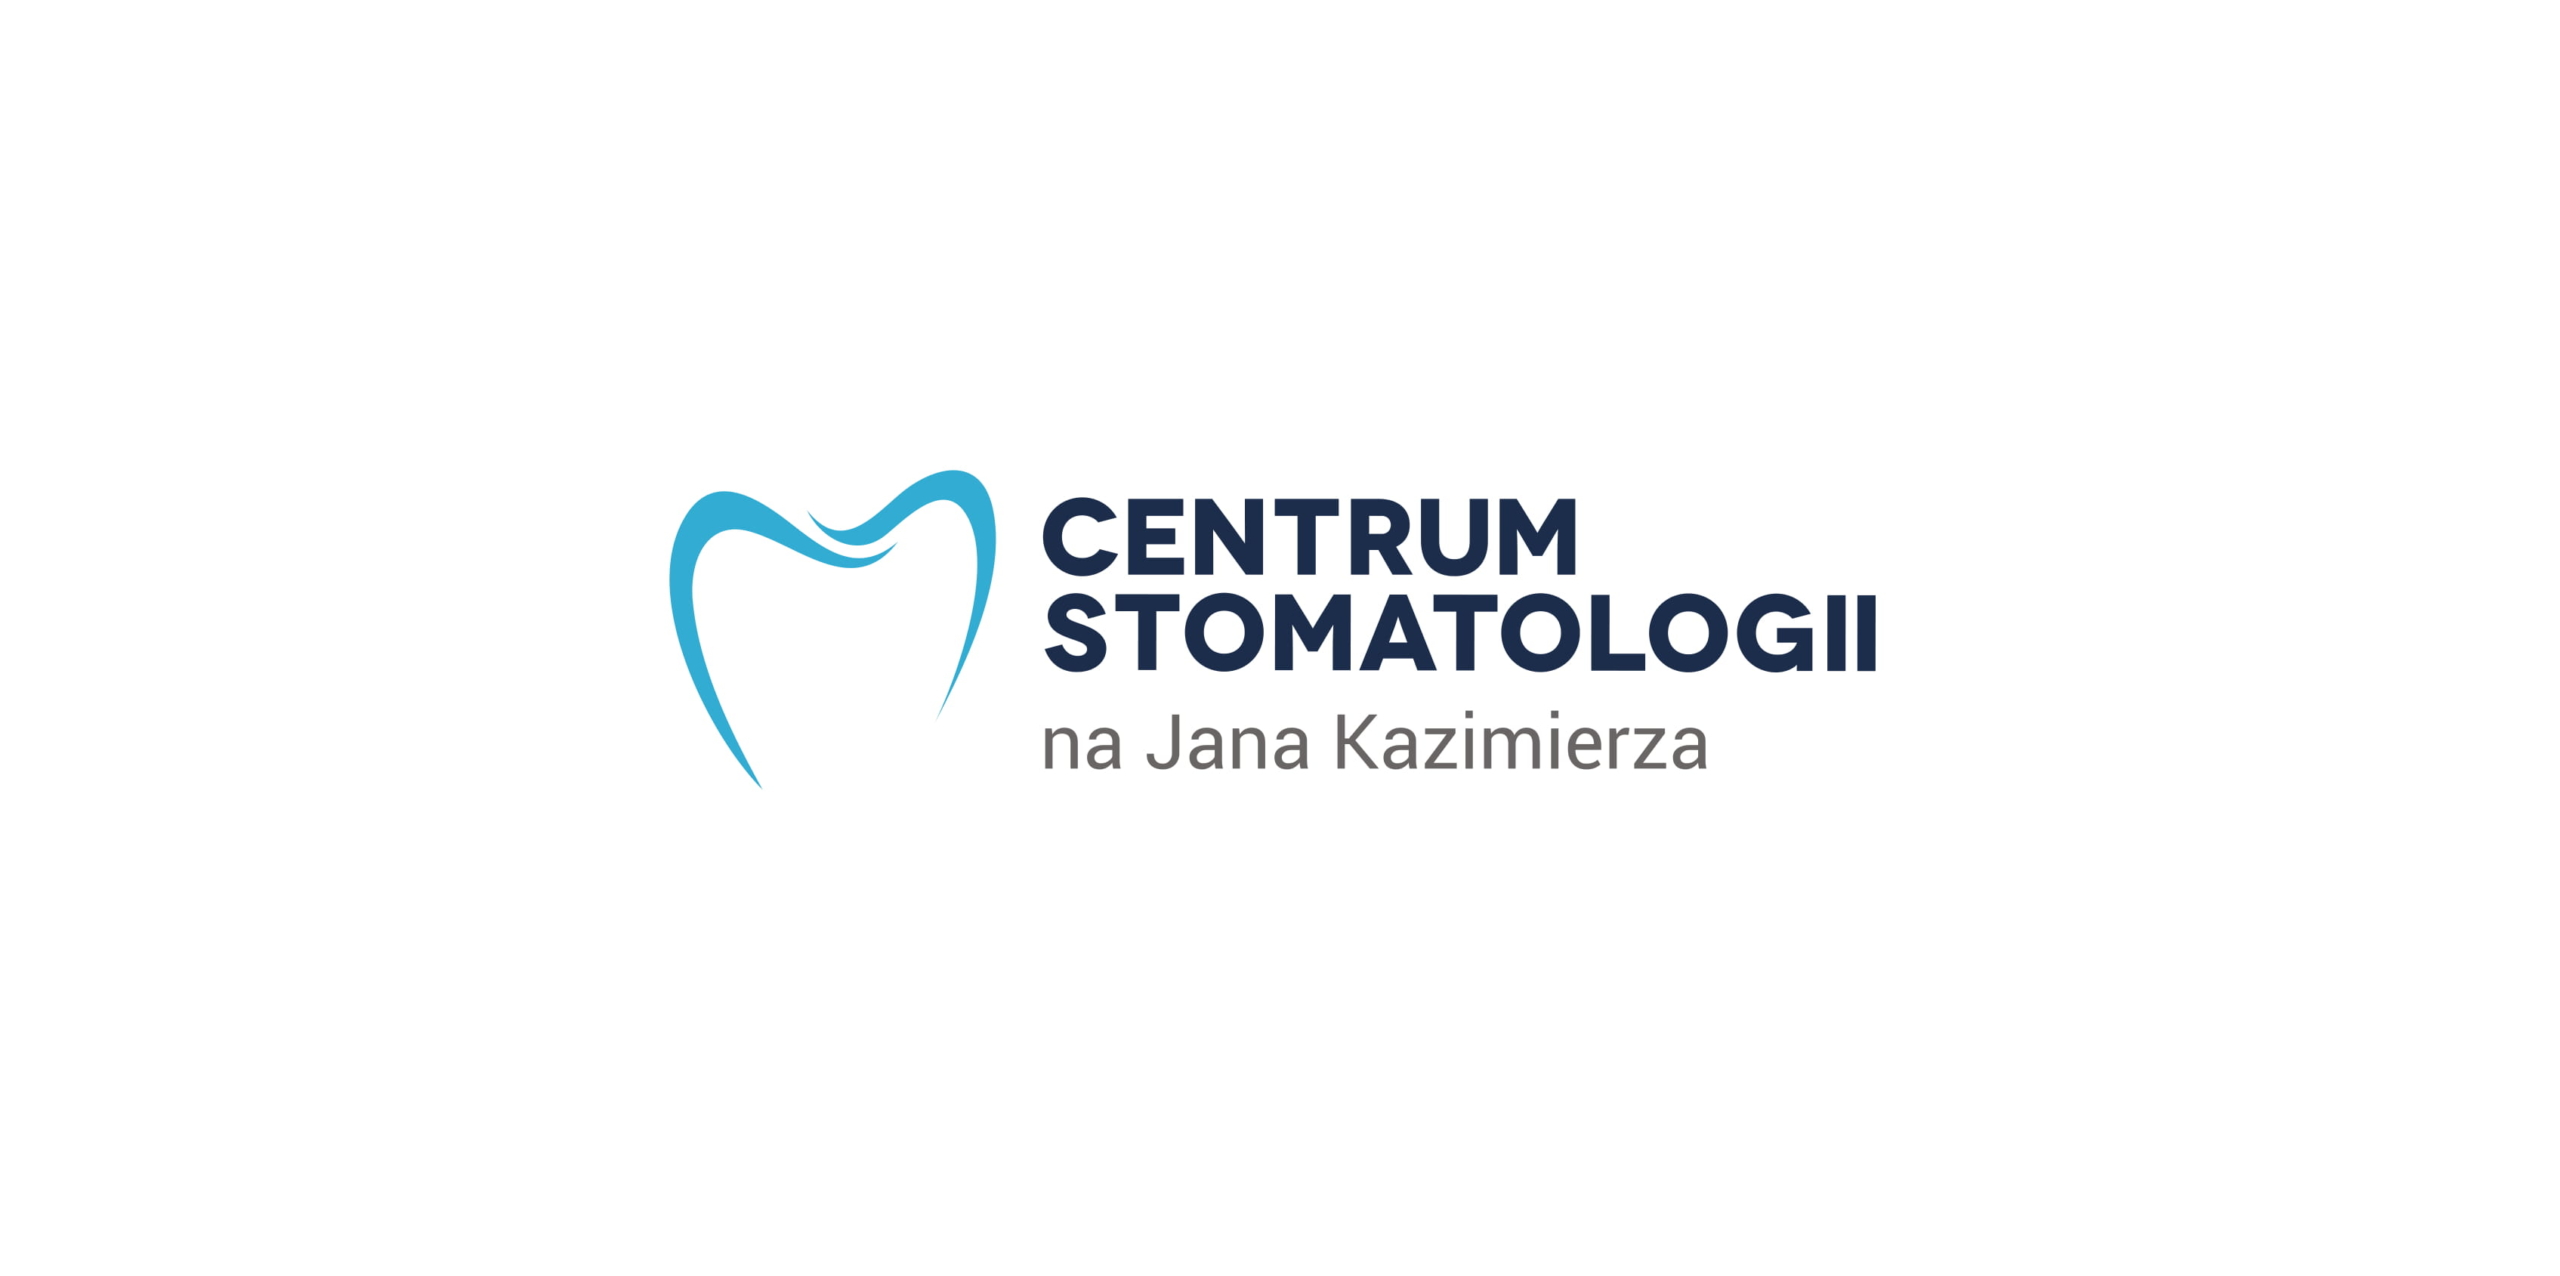 Logo centrum stomatologii 1 scaled